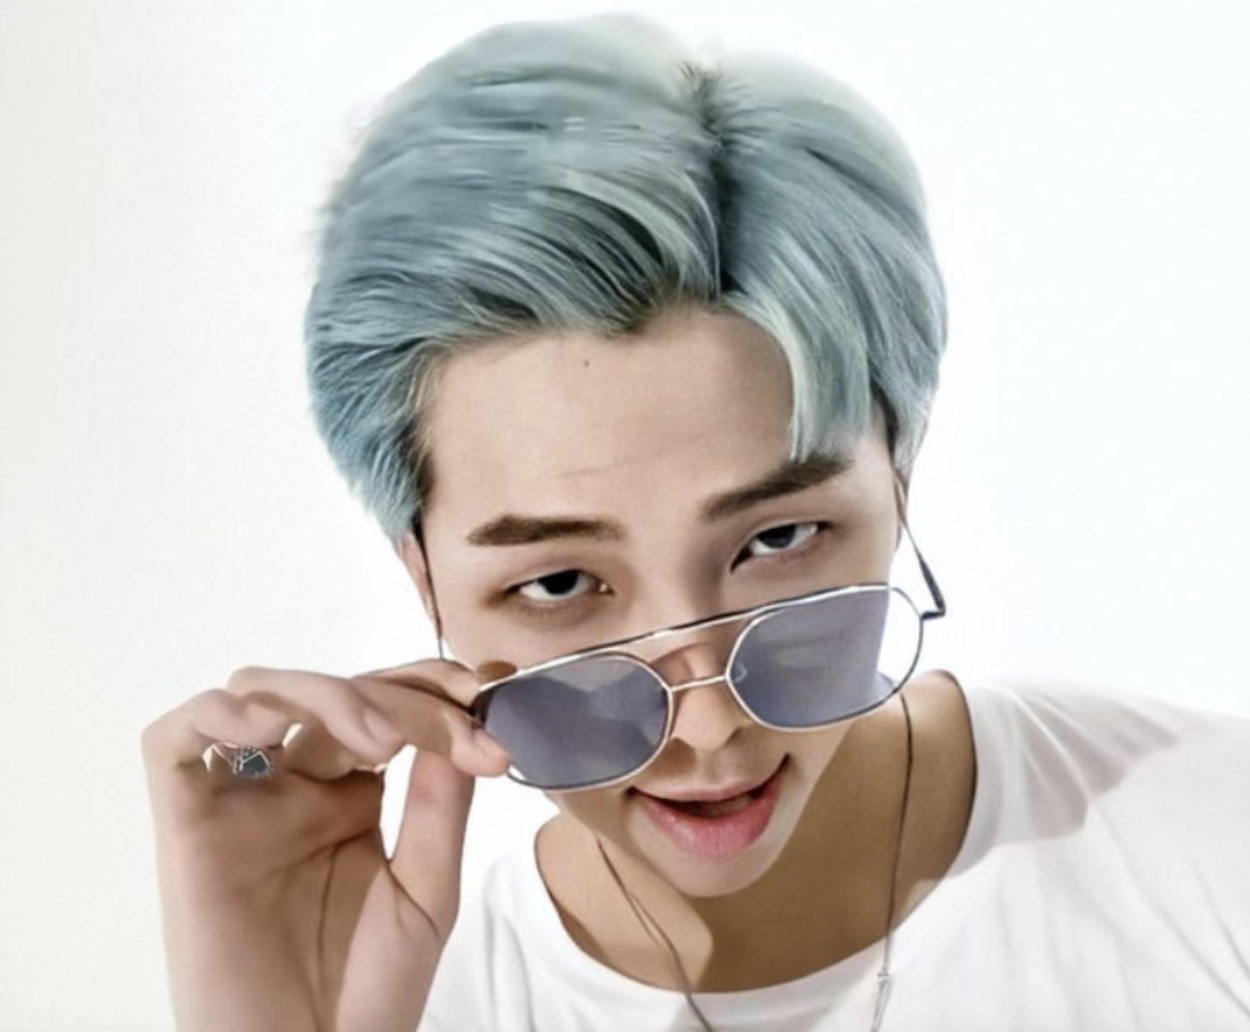 BTS RM blue hair - wide 7